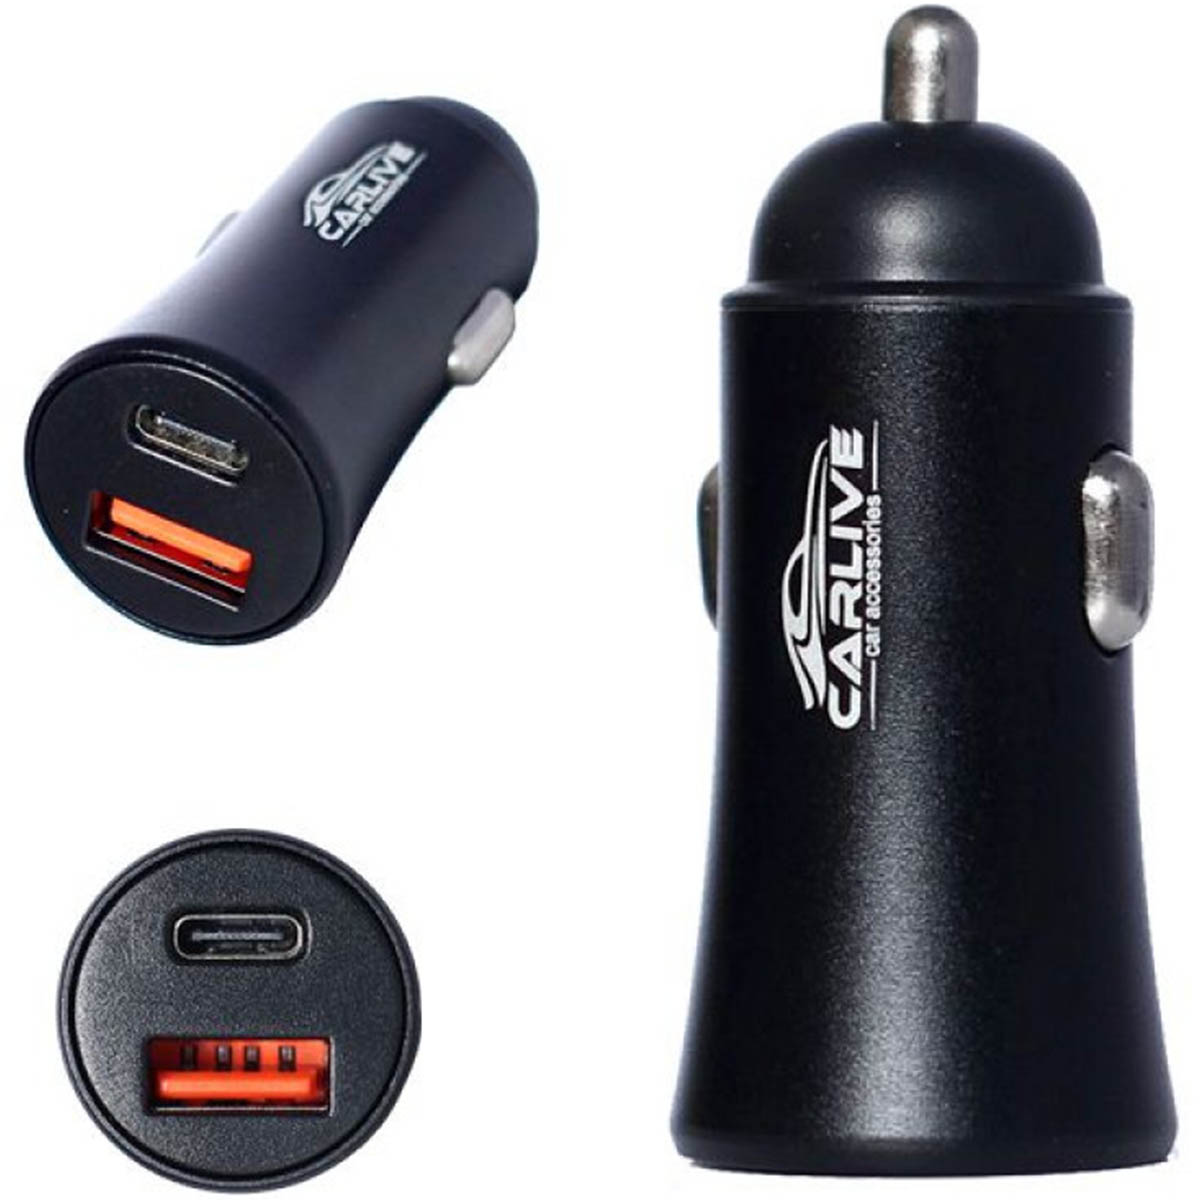 АЗУ (Автомобильное зарядное устройство) CARLIVE MR66, 1 USB QC 3.0, 1 Type-C, цвет черный